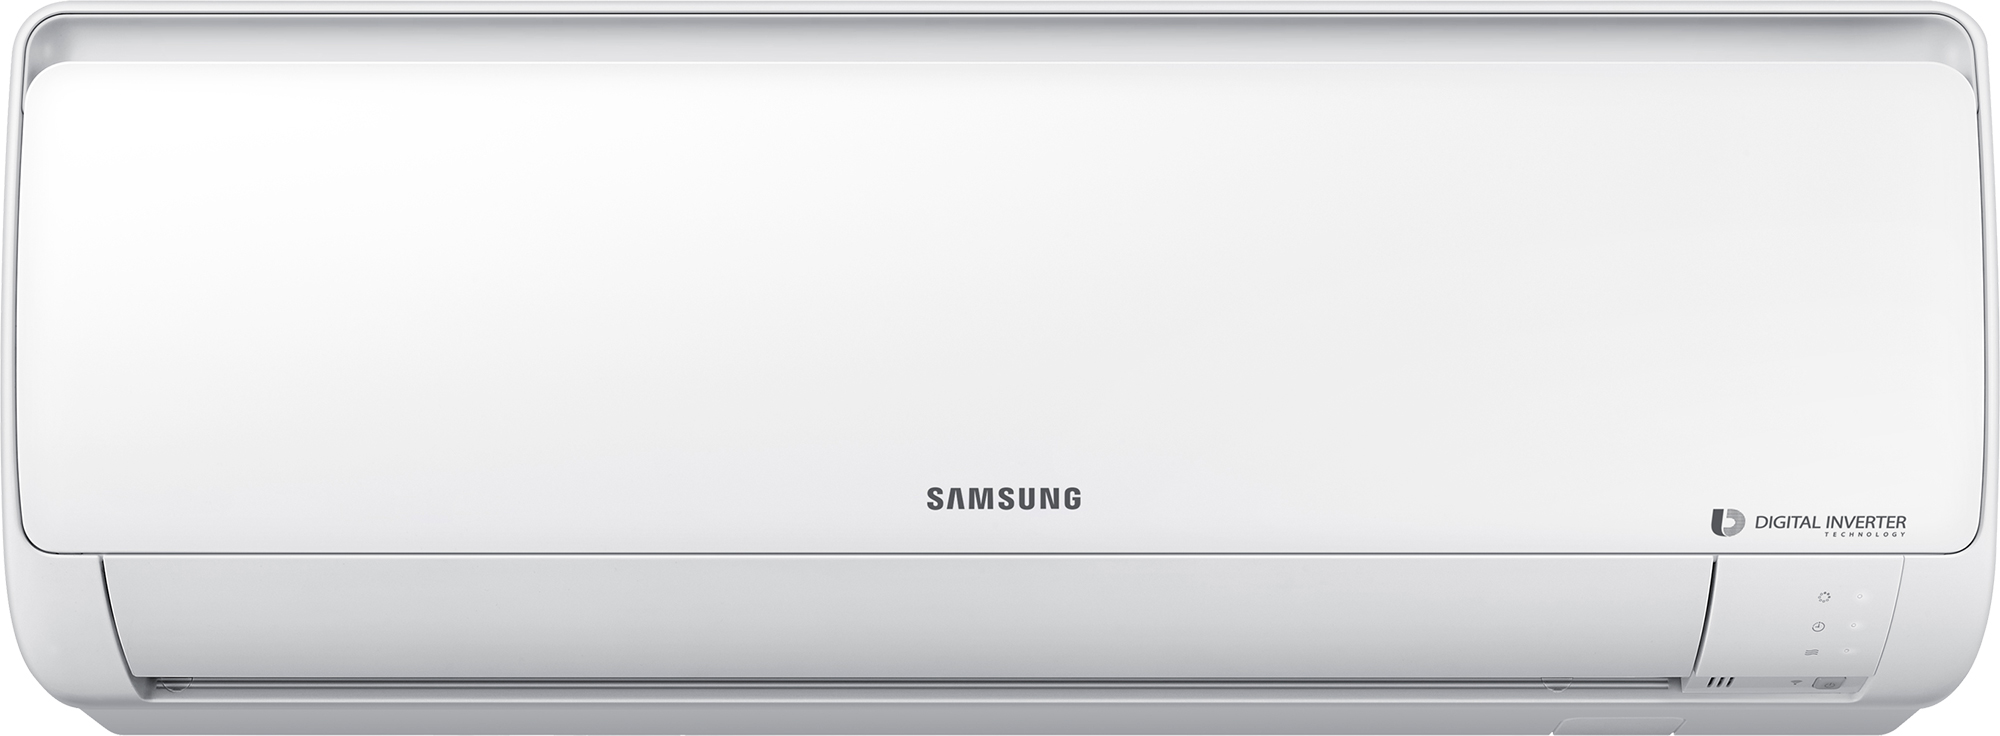 Кондиционер сплит-система Samsung AR24RSFPAWQNER / AR24RSFPAWQXER в интернет-магазине, главное фото